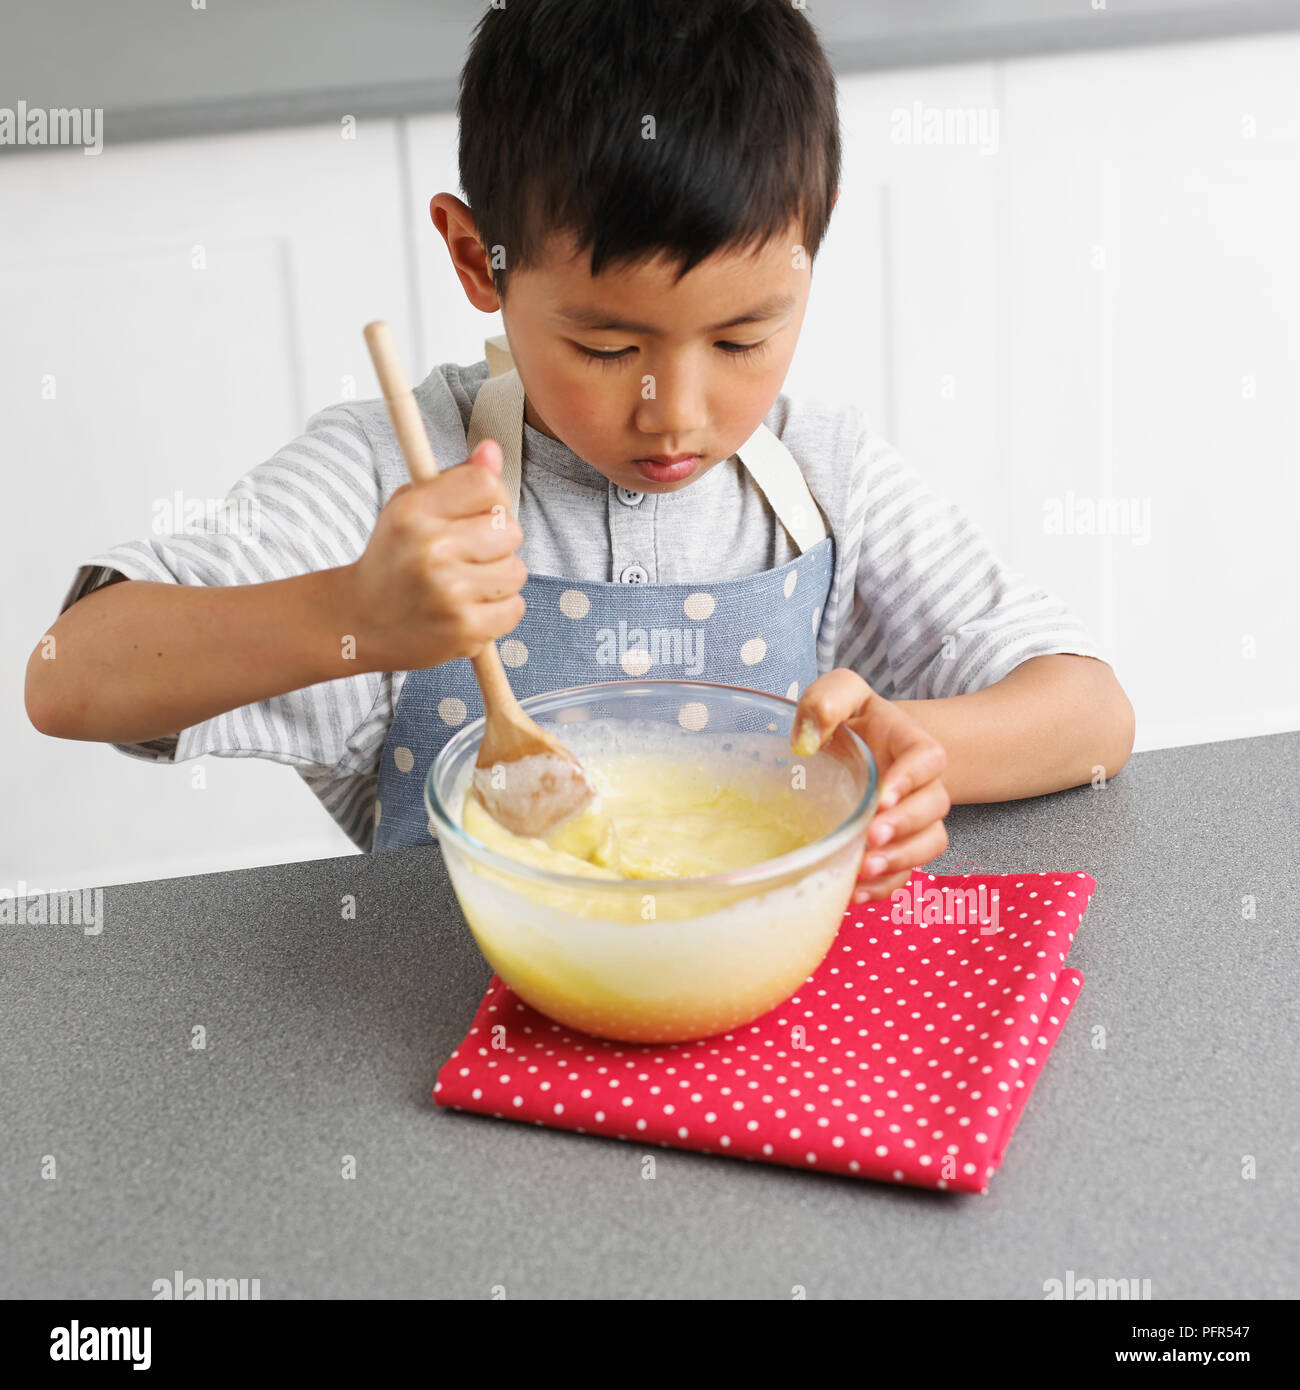 Making white chocolate truffles, Boy mixing white chocolate mixture, 4 years Stock Photo